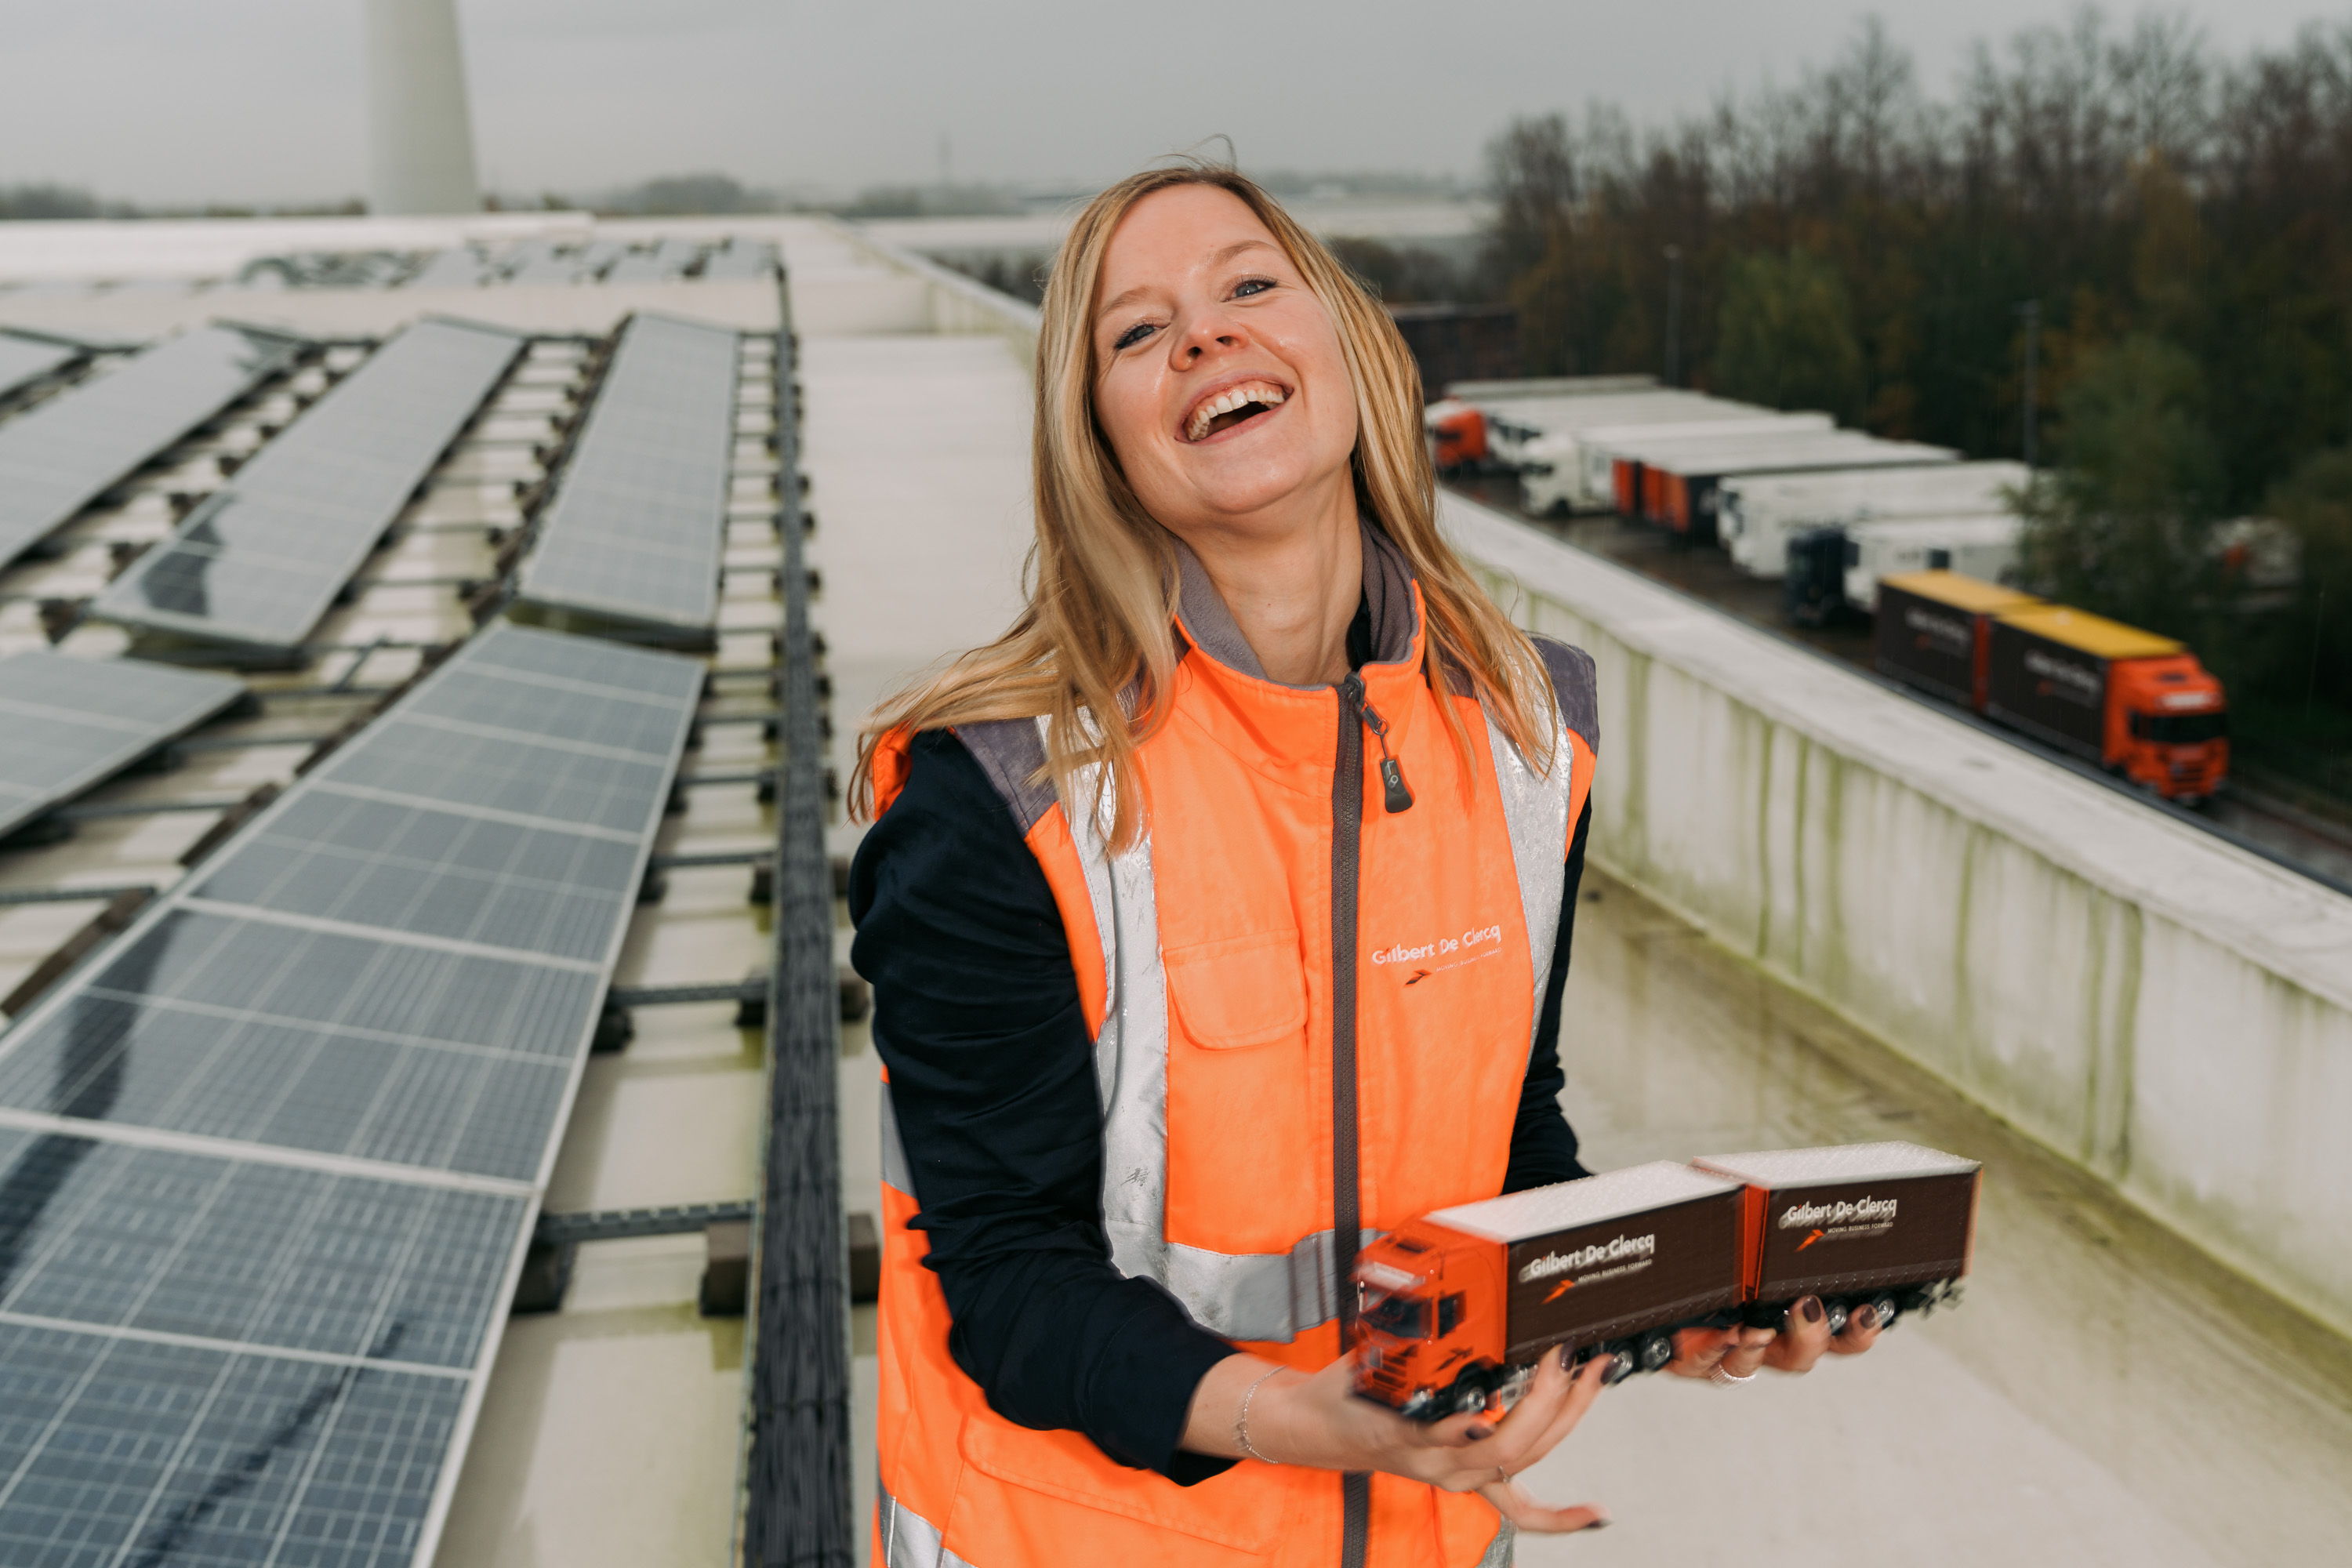 Energie-opwekker Kim op het dak van de magazijnen van Gilbert De Clercq